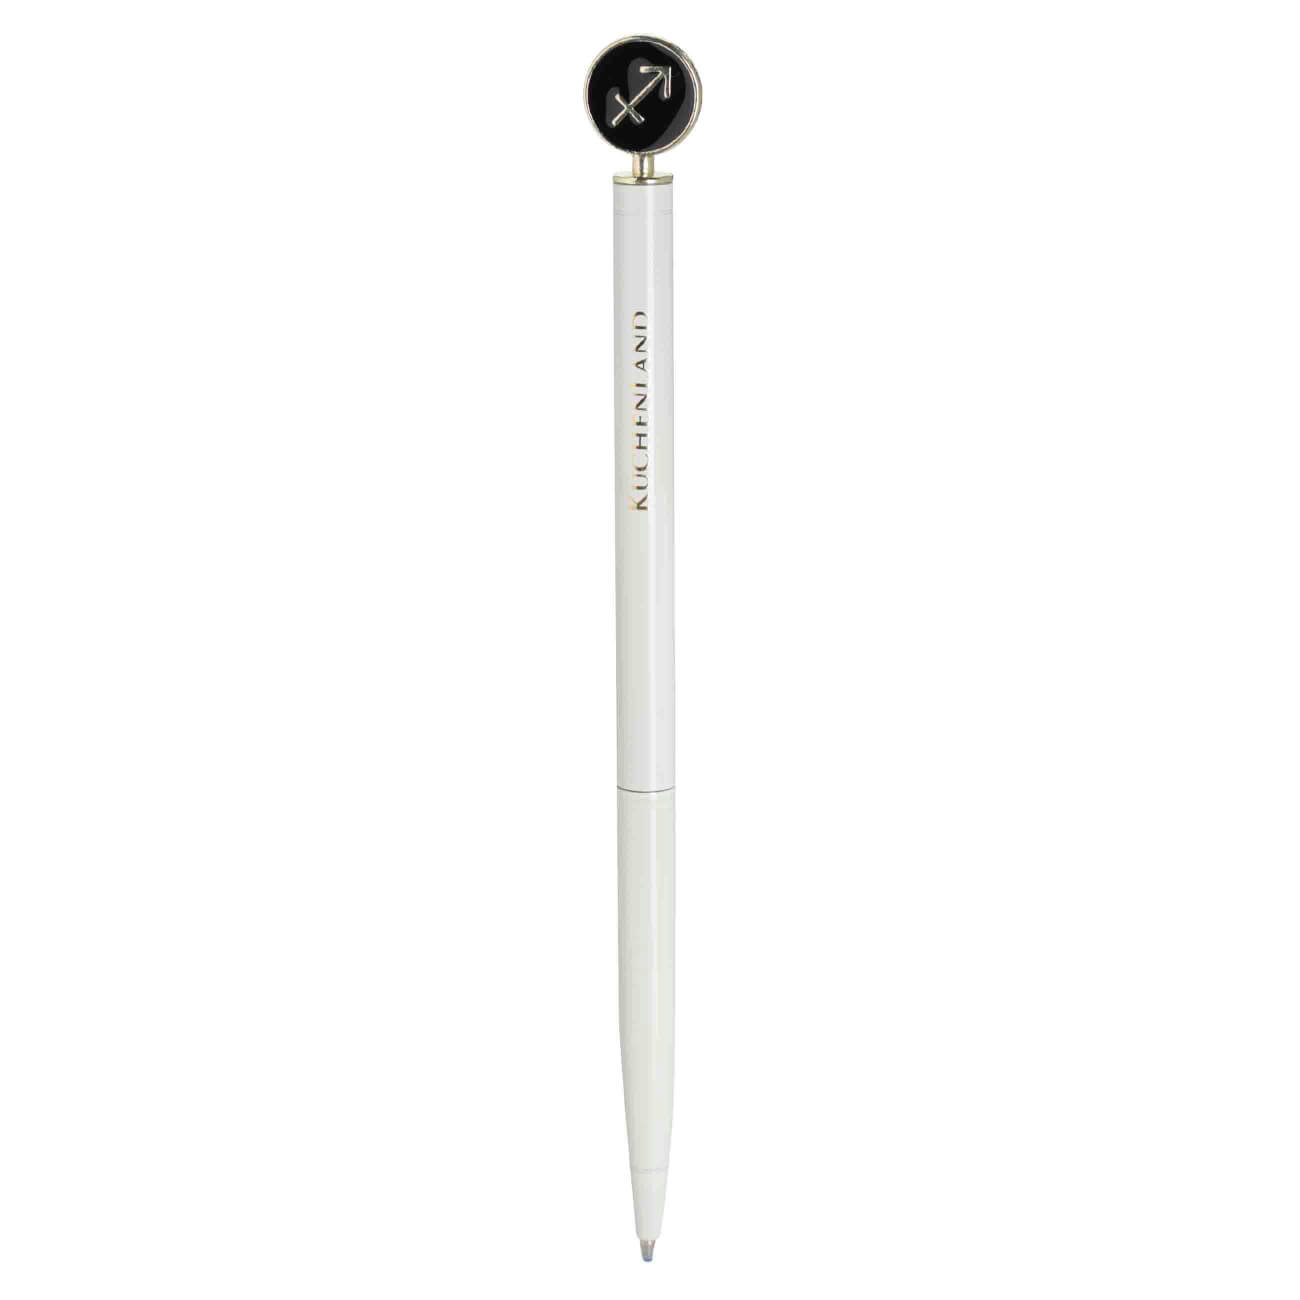 Ручка шариковая, 15 см, с фигуркой, сталь, молочно-золотистая, Стрелец, Zodiac ручка закладка